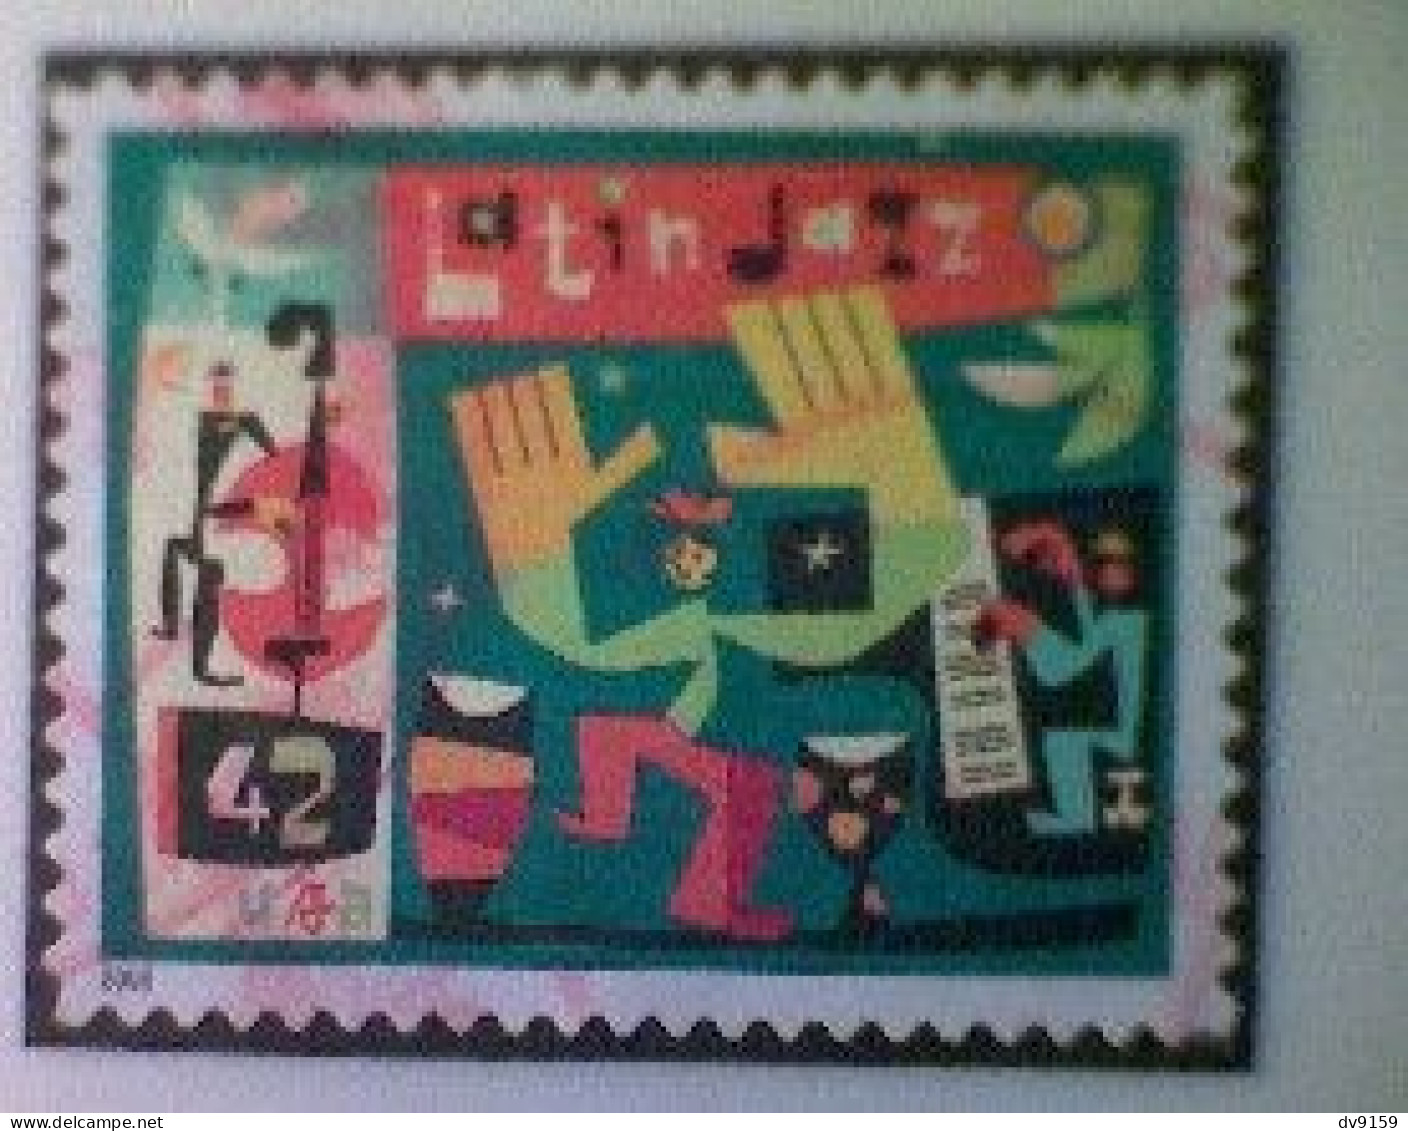 United States, Scott #4349, Used(o), 2008, Latin Jazz, 42¢, Multicolored - Usados